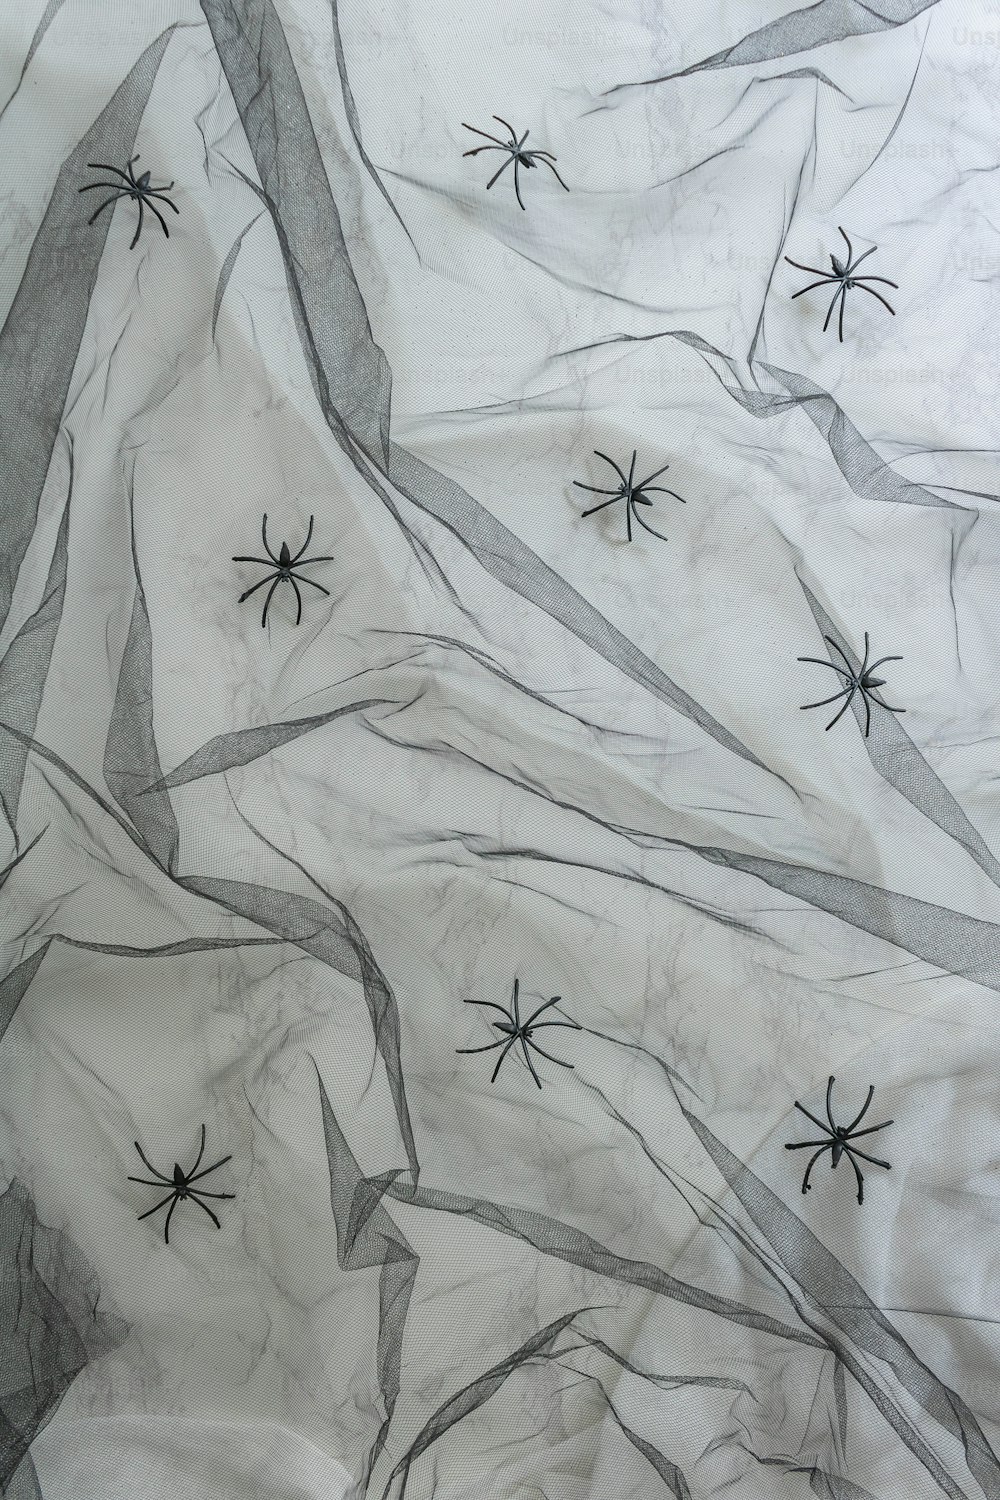 Un dessin en noir et blanc de toiles d’araignées